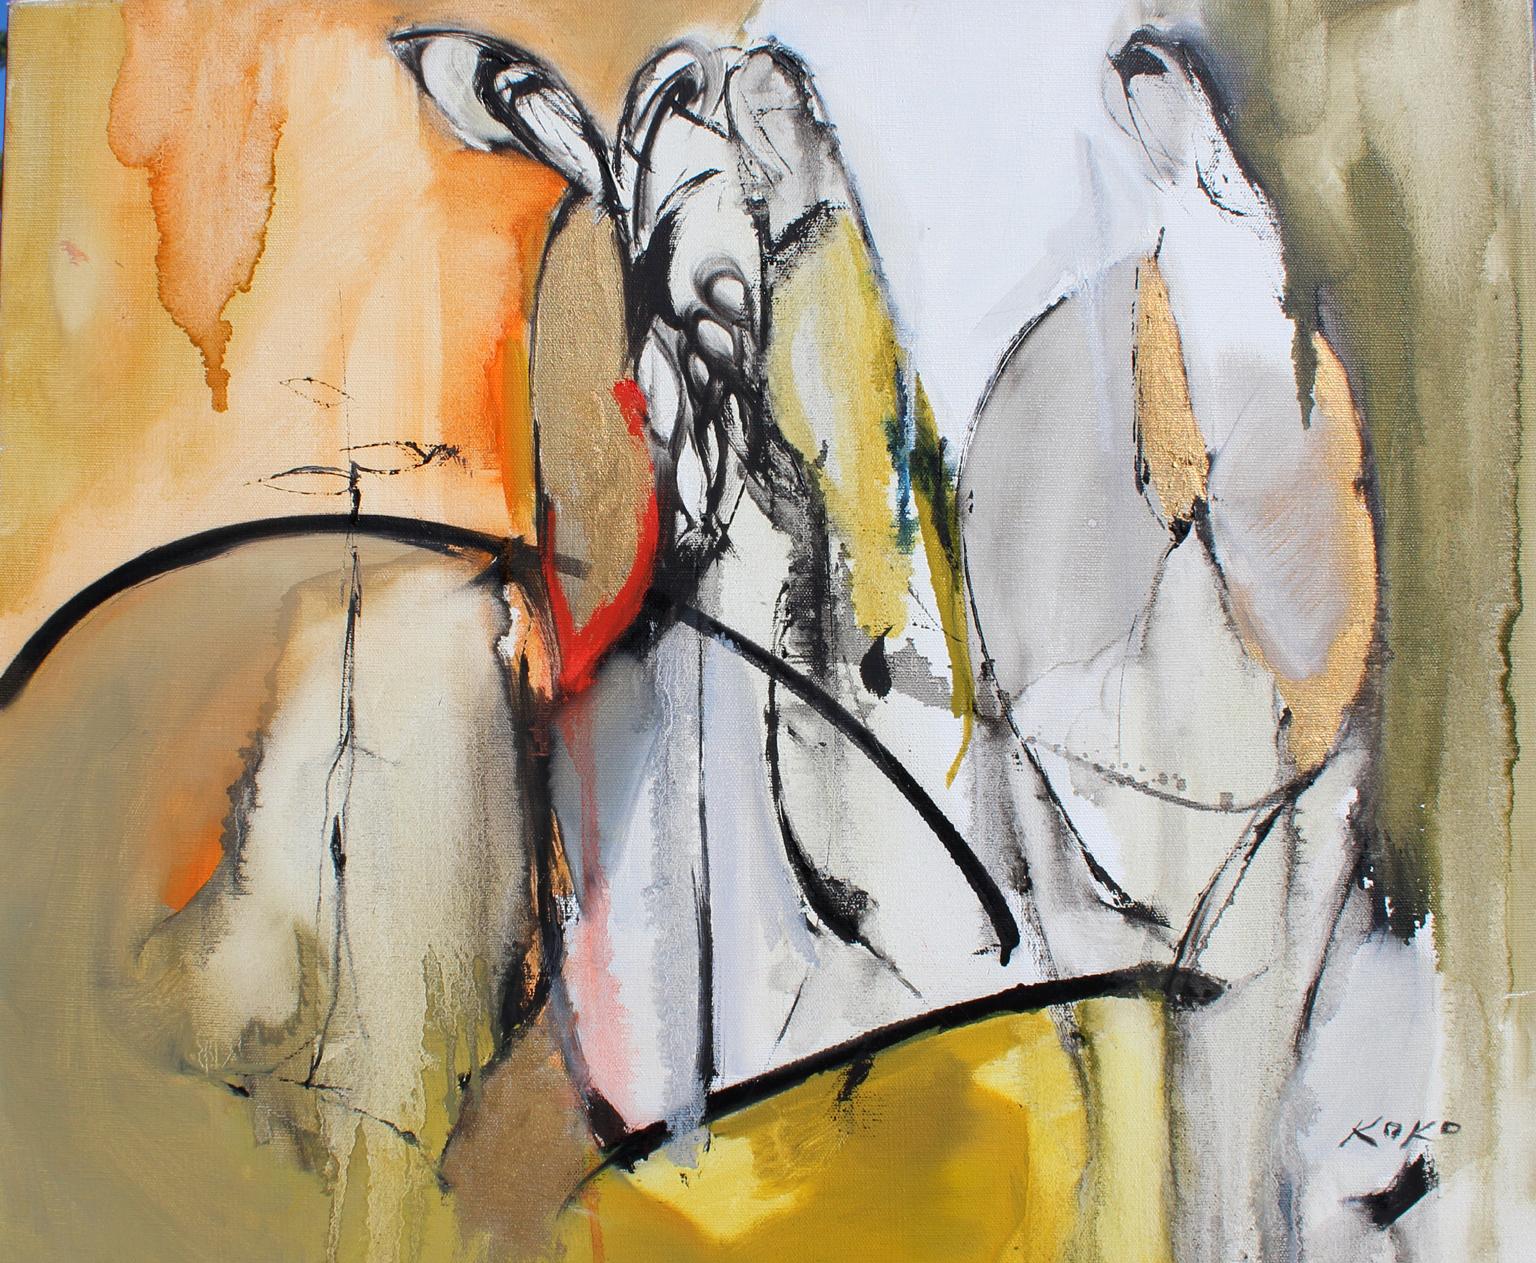 Abstract Painting KOKO HOVAGUIMIAN - Étude Barroco, sélection de musiciens, 20x24 po, huile sur toile. Signé en bas à droite